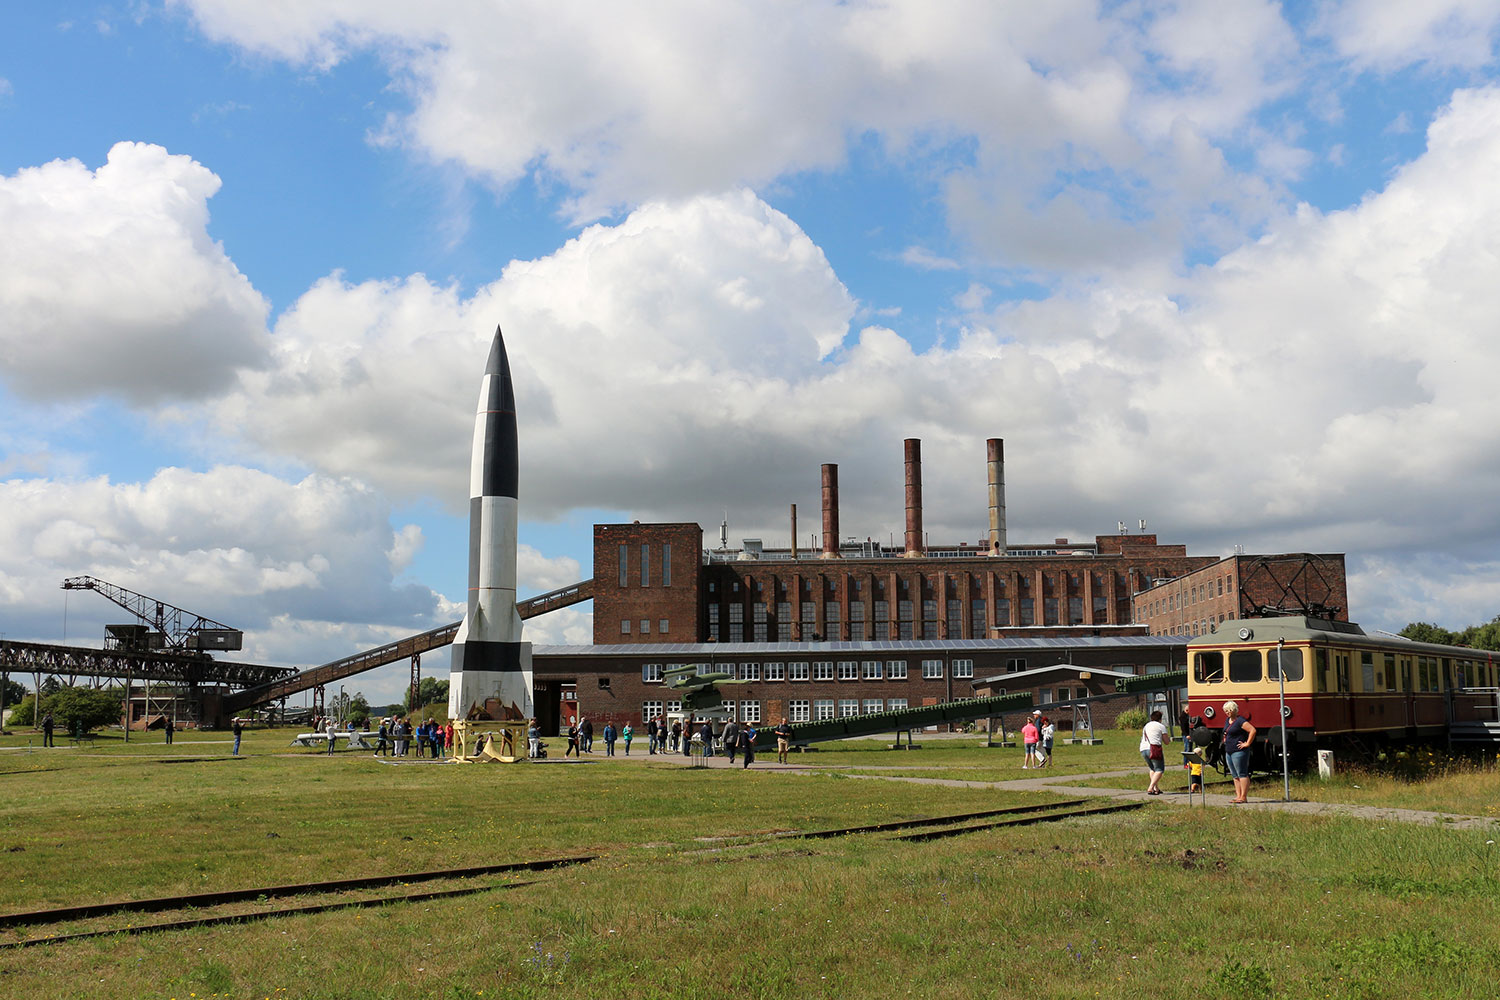 Foto des Außengeländes des Museums in Peenemünde. Eine Rakete und ein Eisenbahnwagon ist zu sehen.